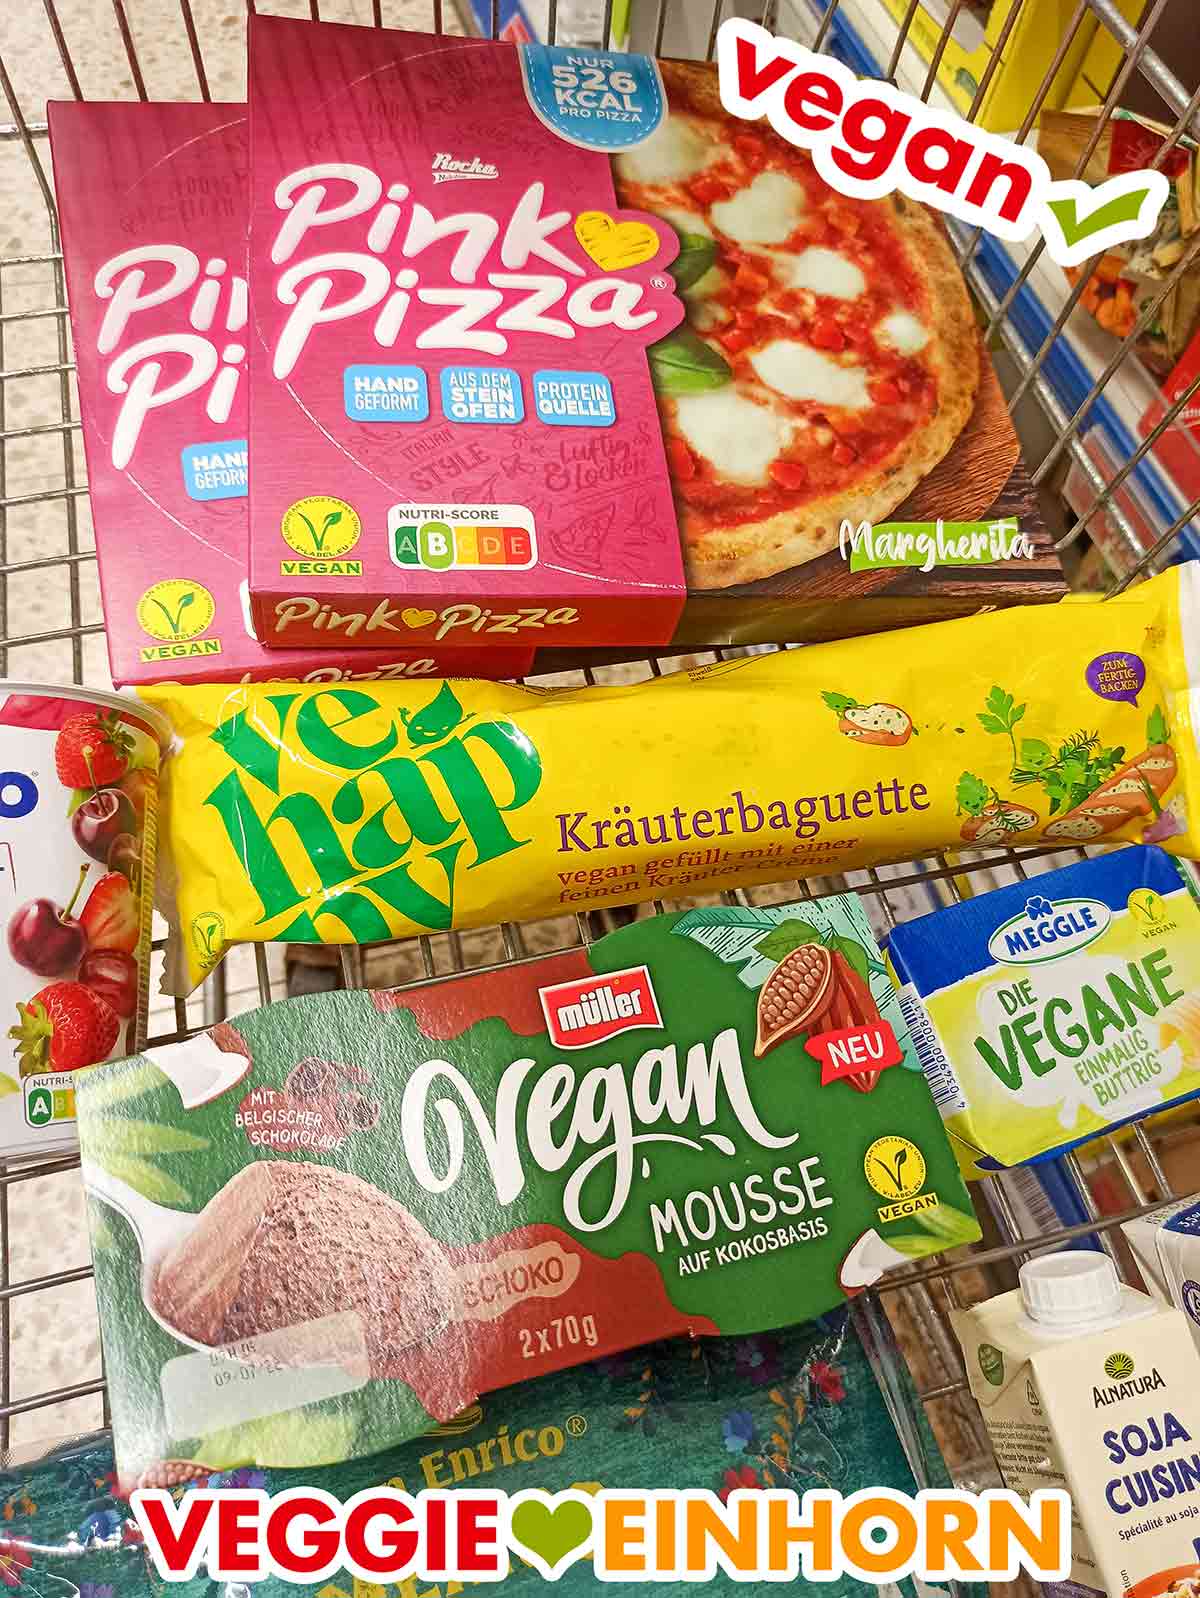 Müller Vegan Mousse Schoko mit anderen veganen Lebensmitteln im Einkaufswagen